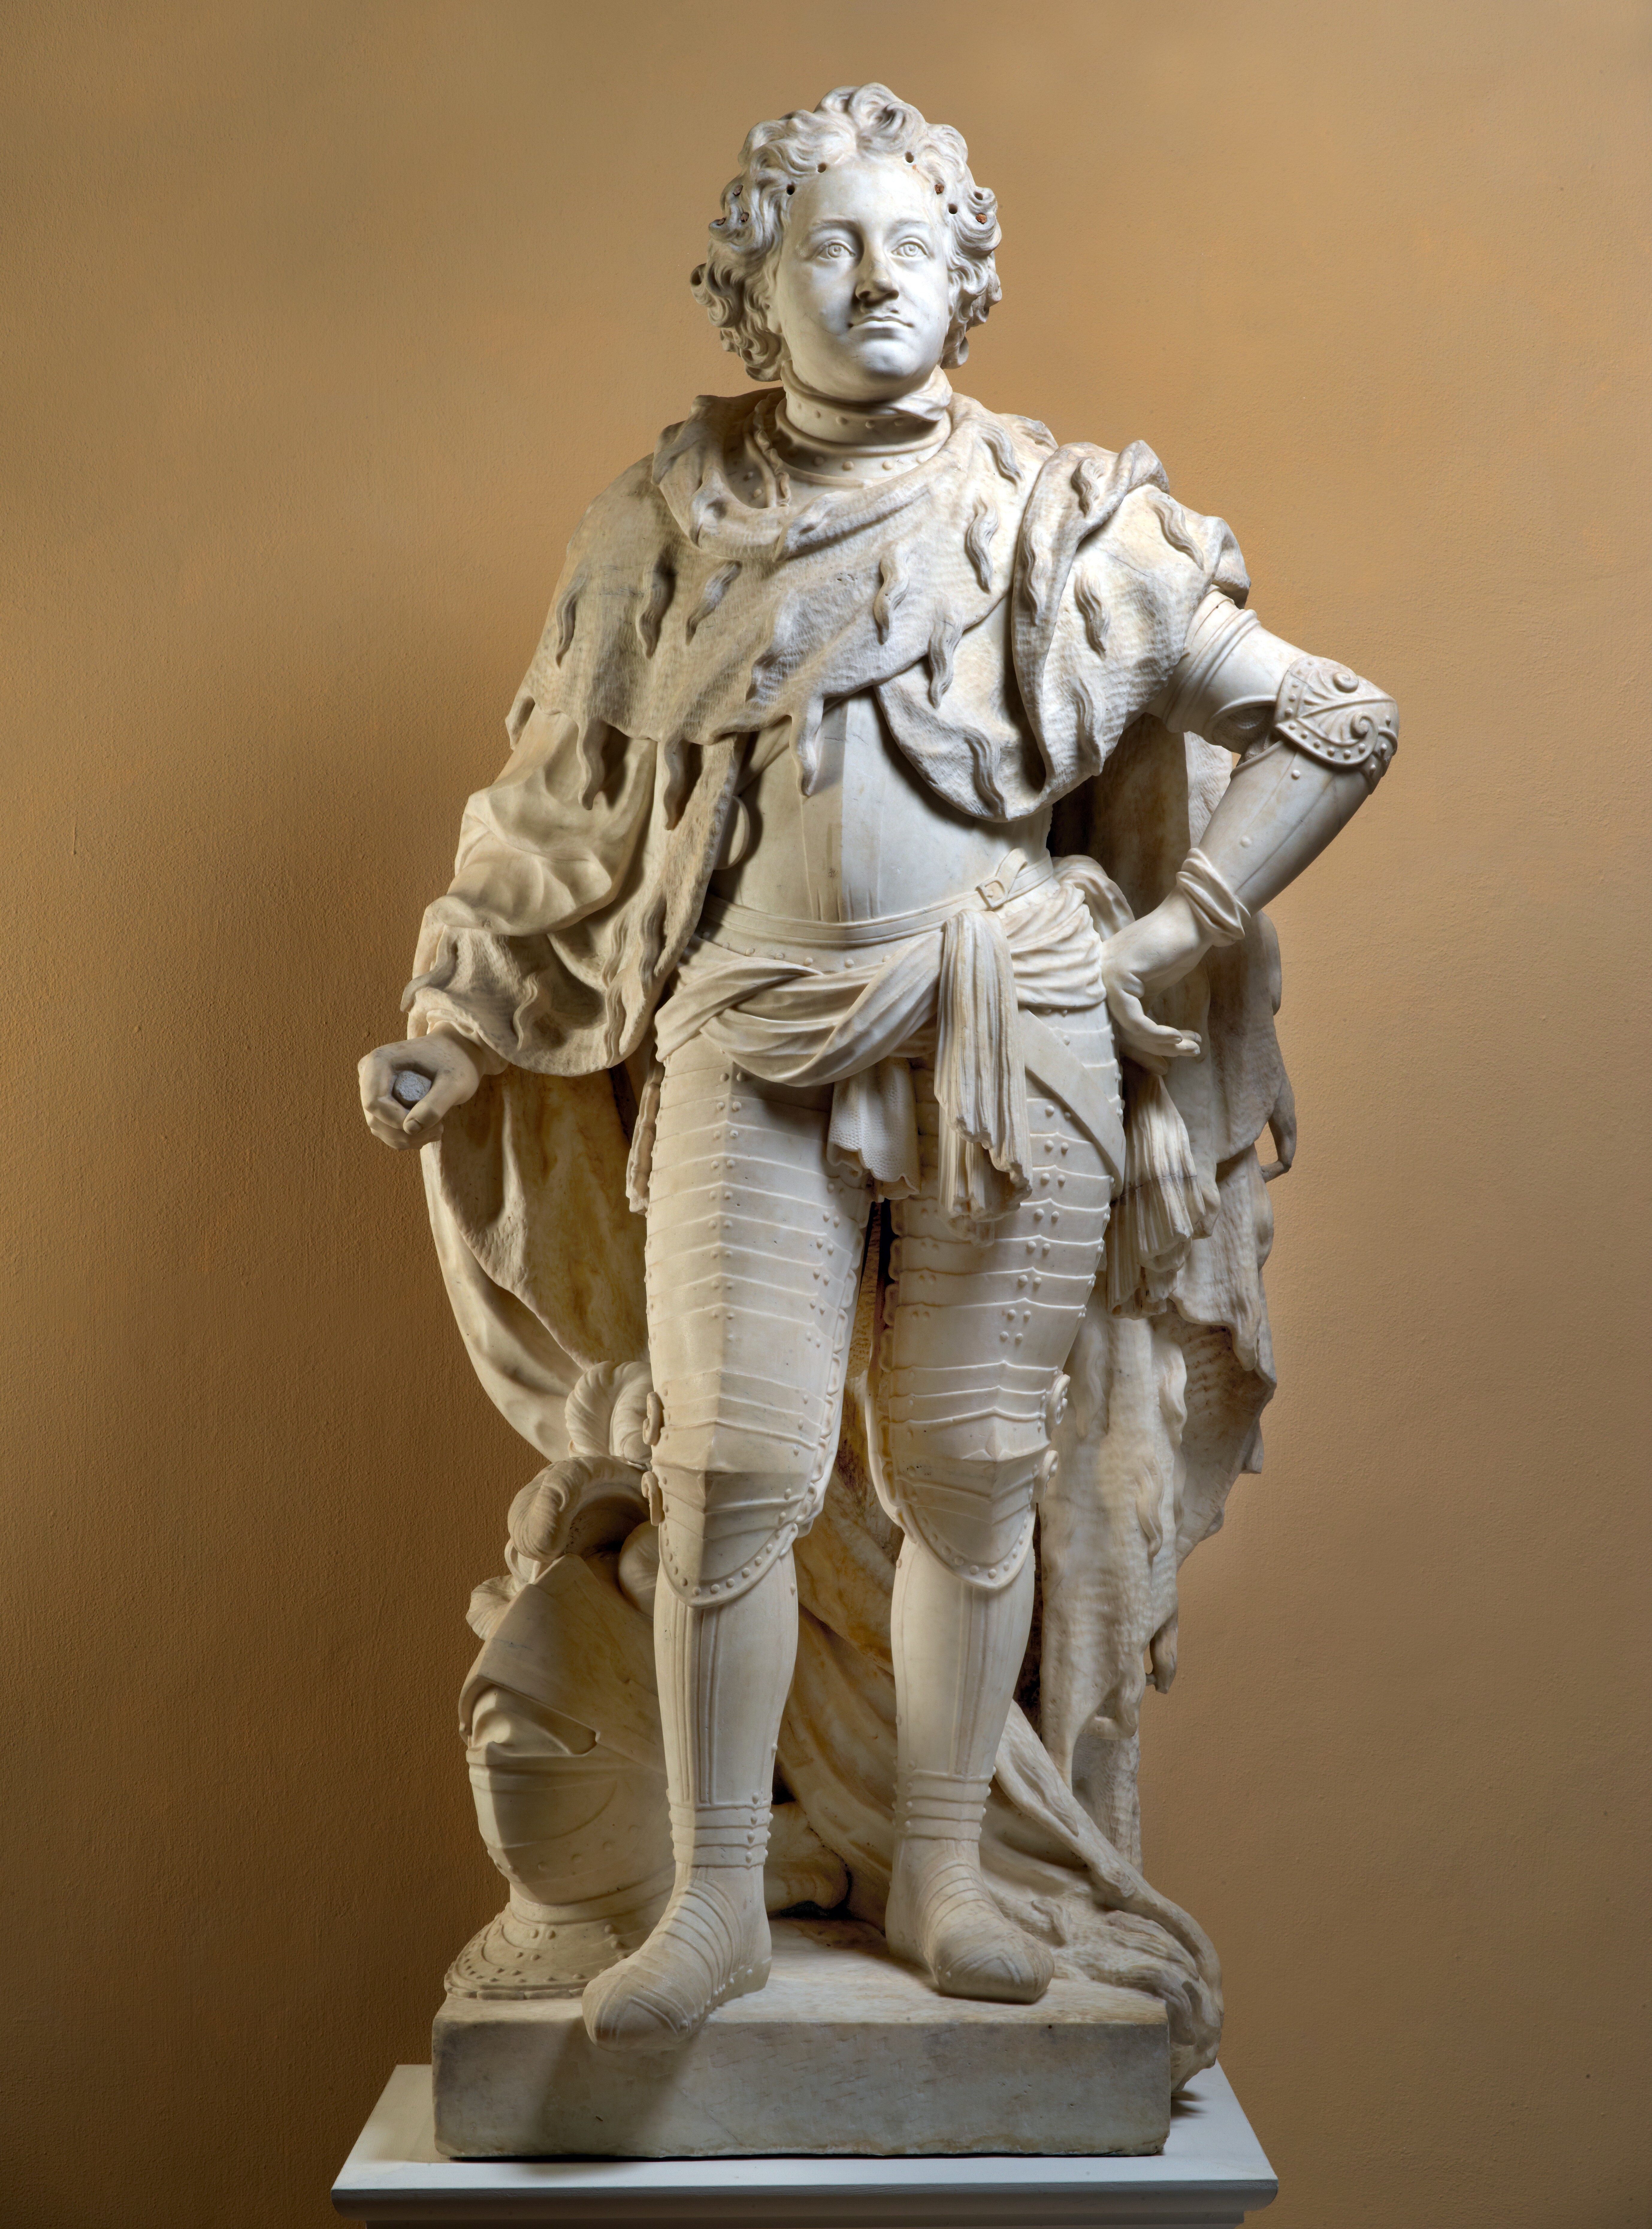 Grupello, Gabriel: Kurfürst Friedrich III. von Brandenburg (König Friedrich I.), 1692, Skulpt.slg. 93. (Stiftung Preußische Schlösser und Gärten Berlin-Brandenburg CC BY-NC-SA)